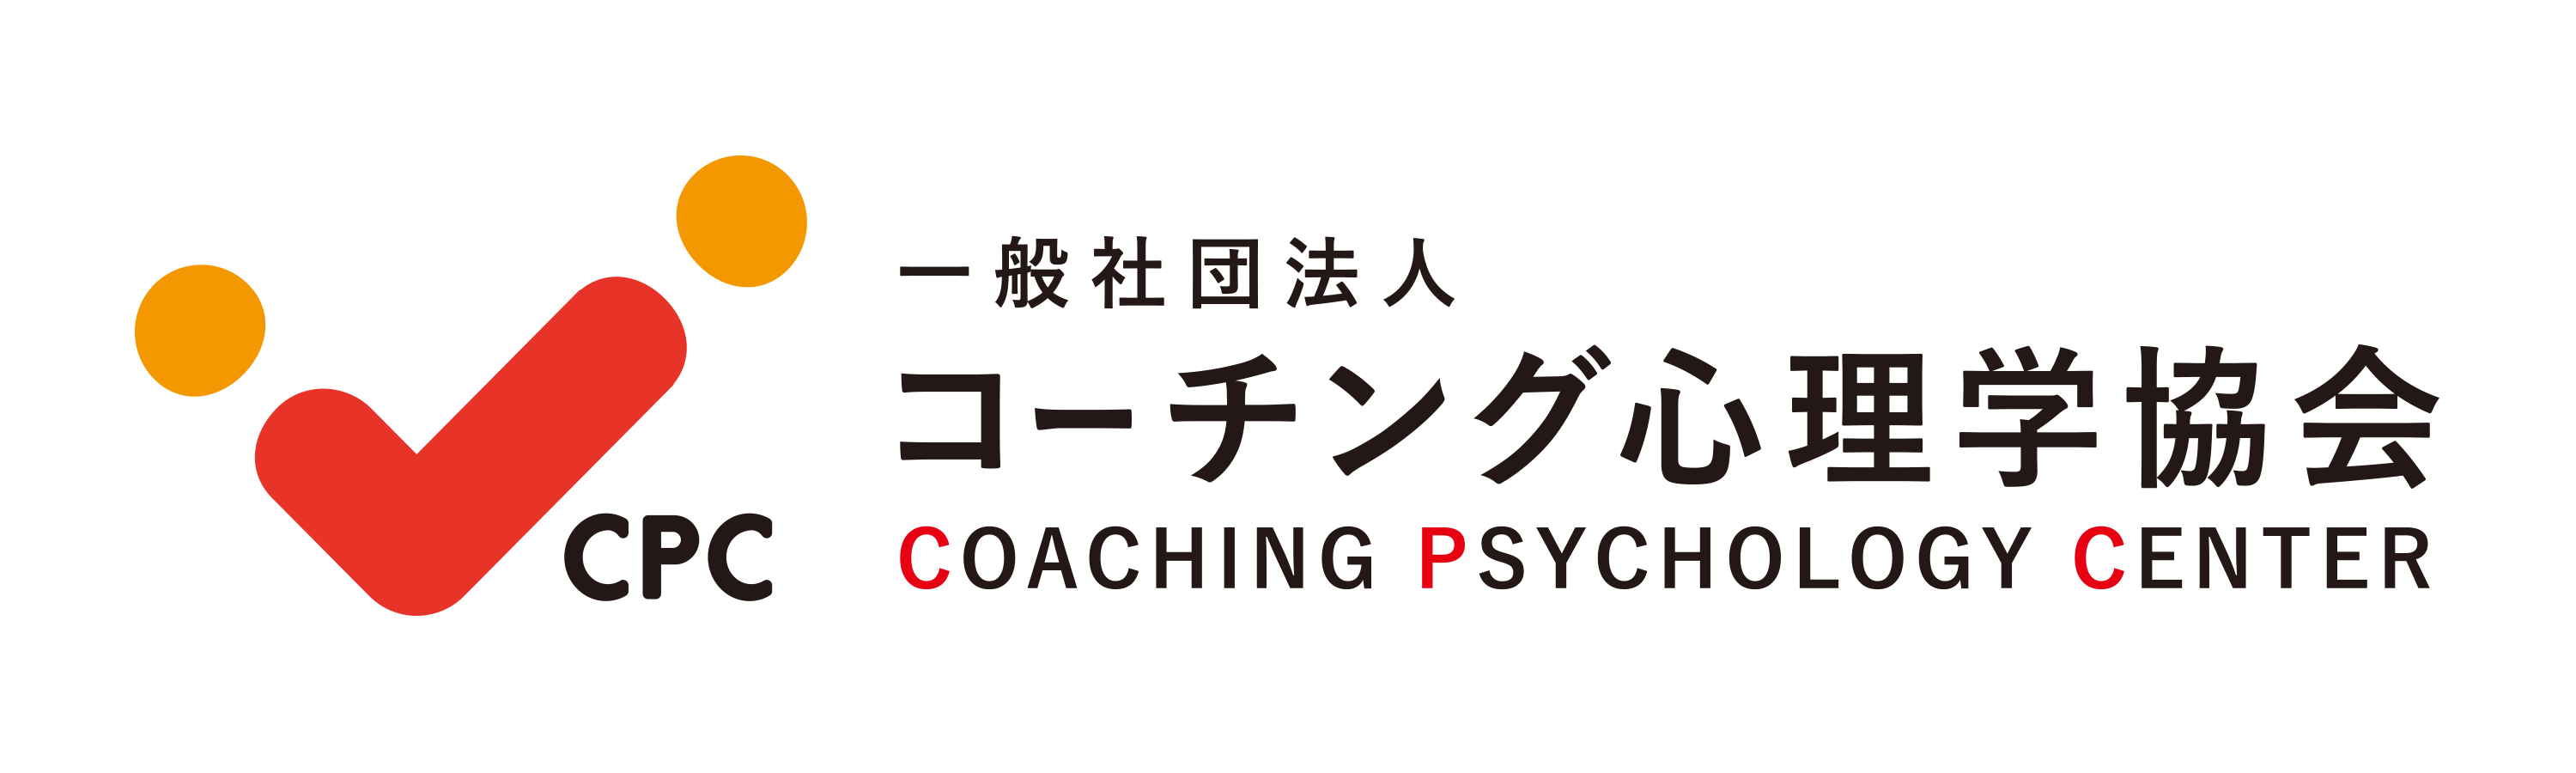 コーチング心理学協会